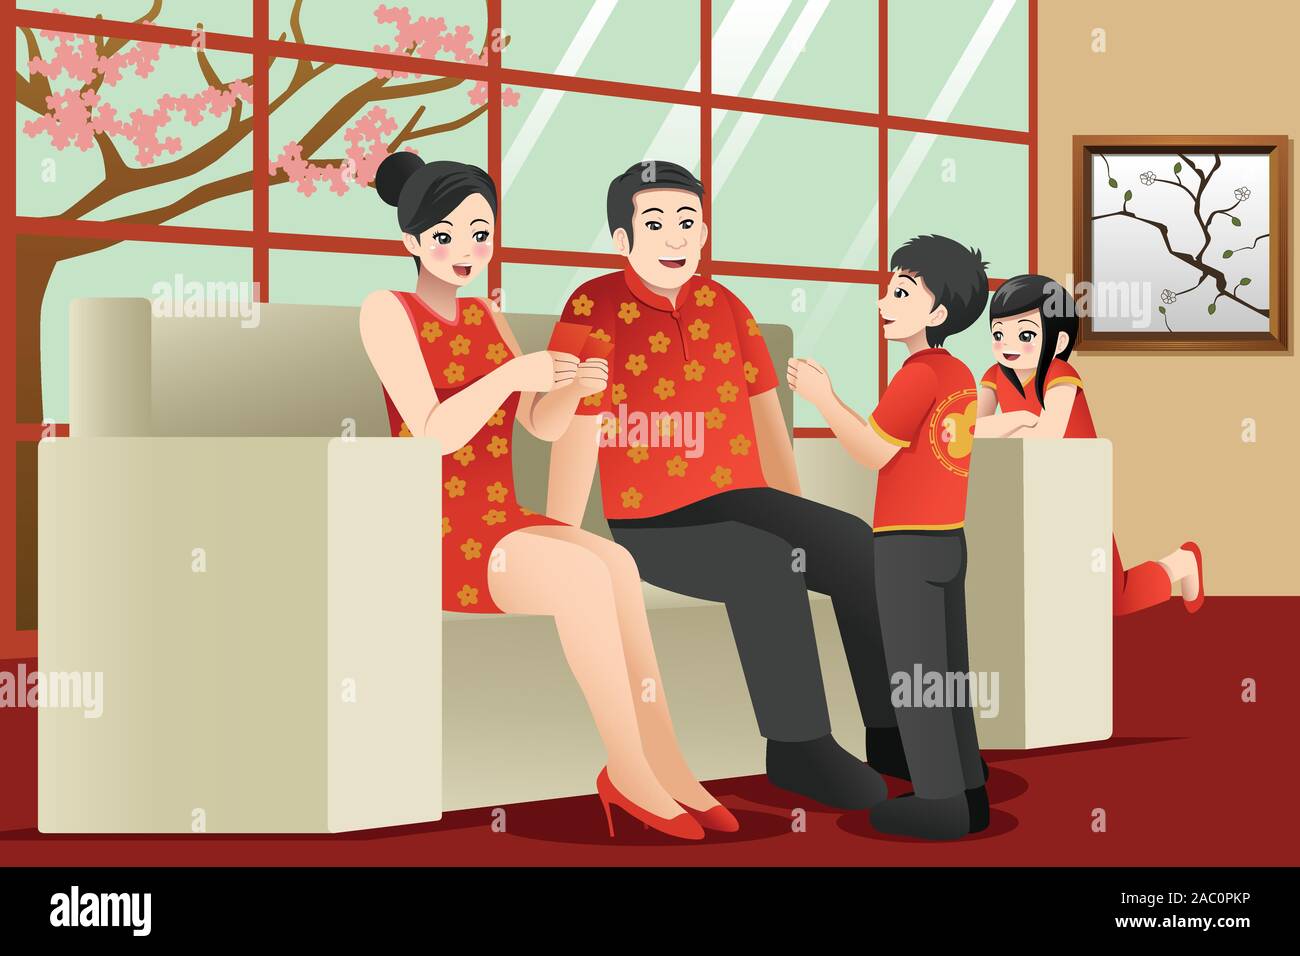 Un vecteur illustration de famille chinoise pour célébrer le Nouvel An chinois Illustration de Vecteur